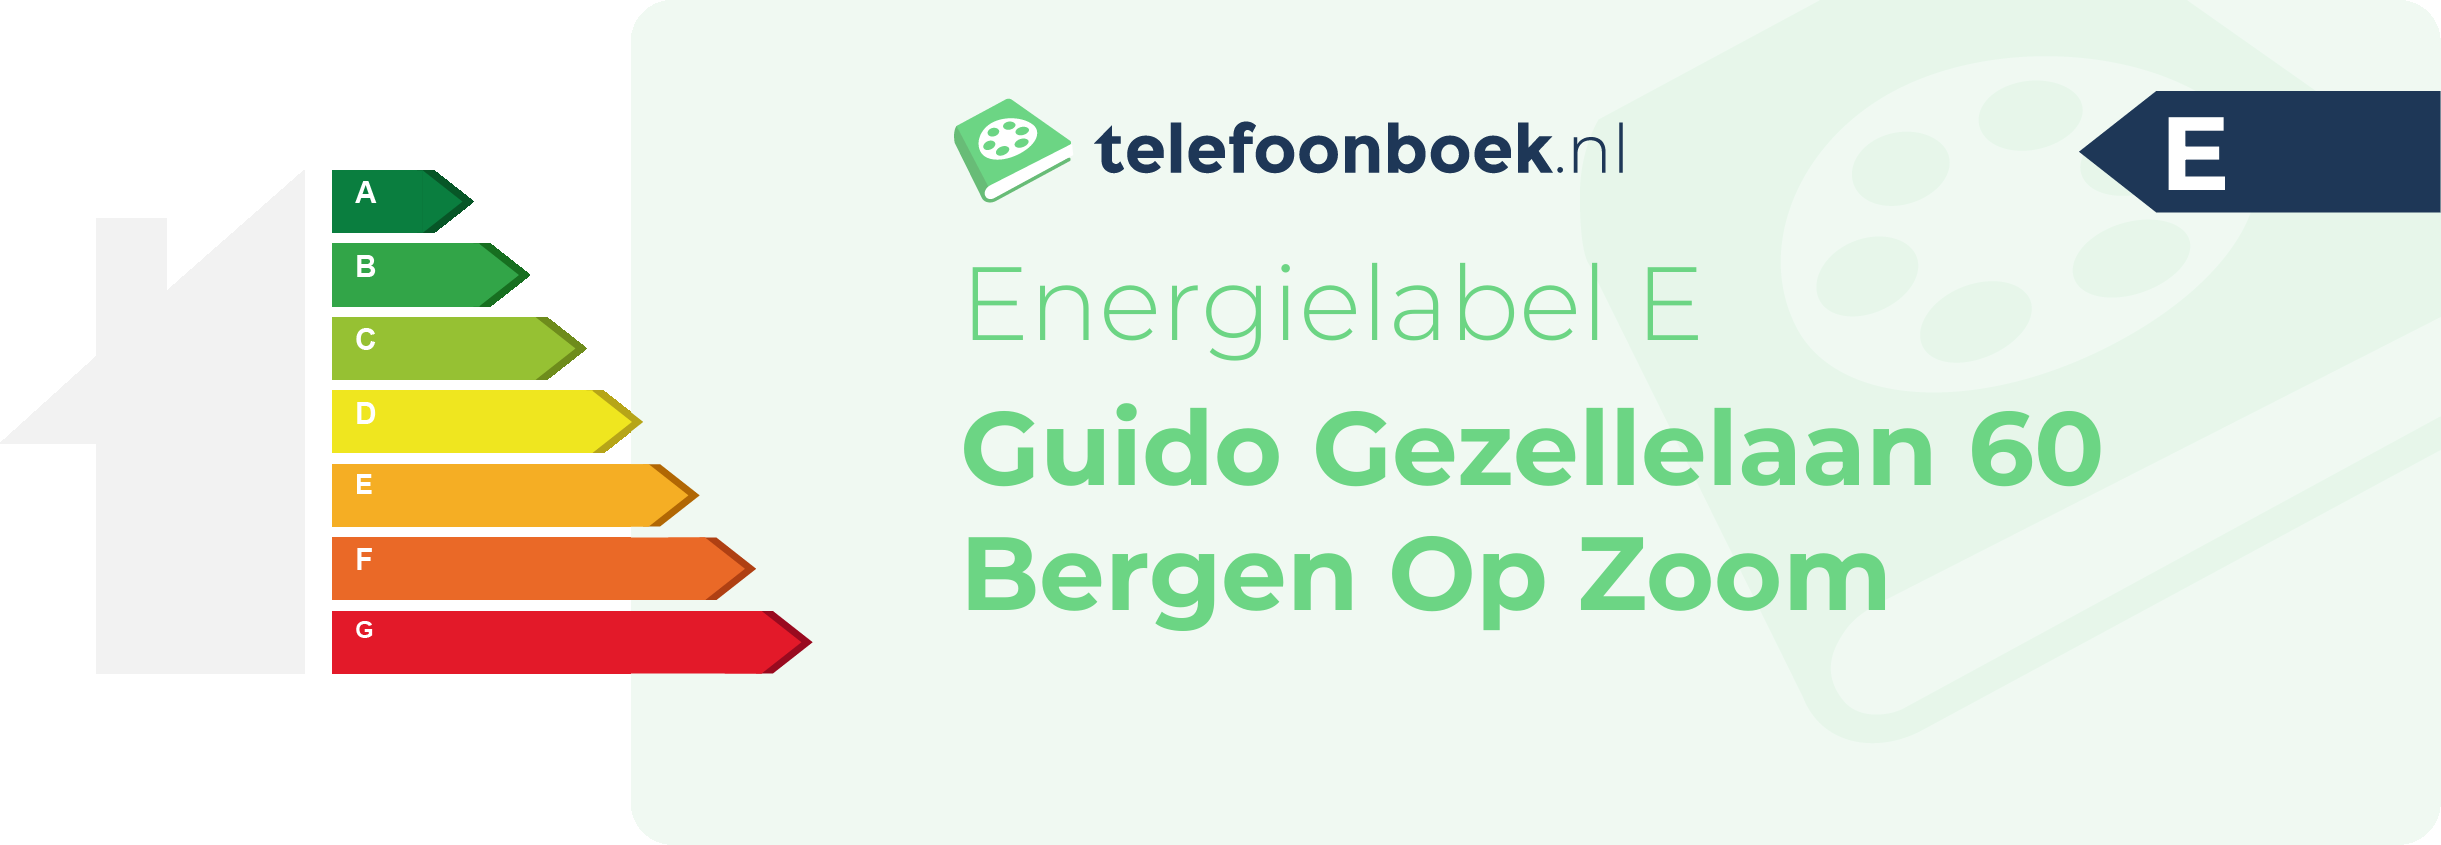 Energielabel Guido Gezellelaan 60 Bergen Op Zoom